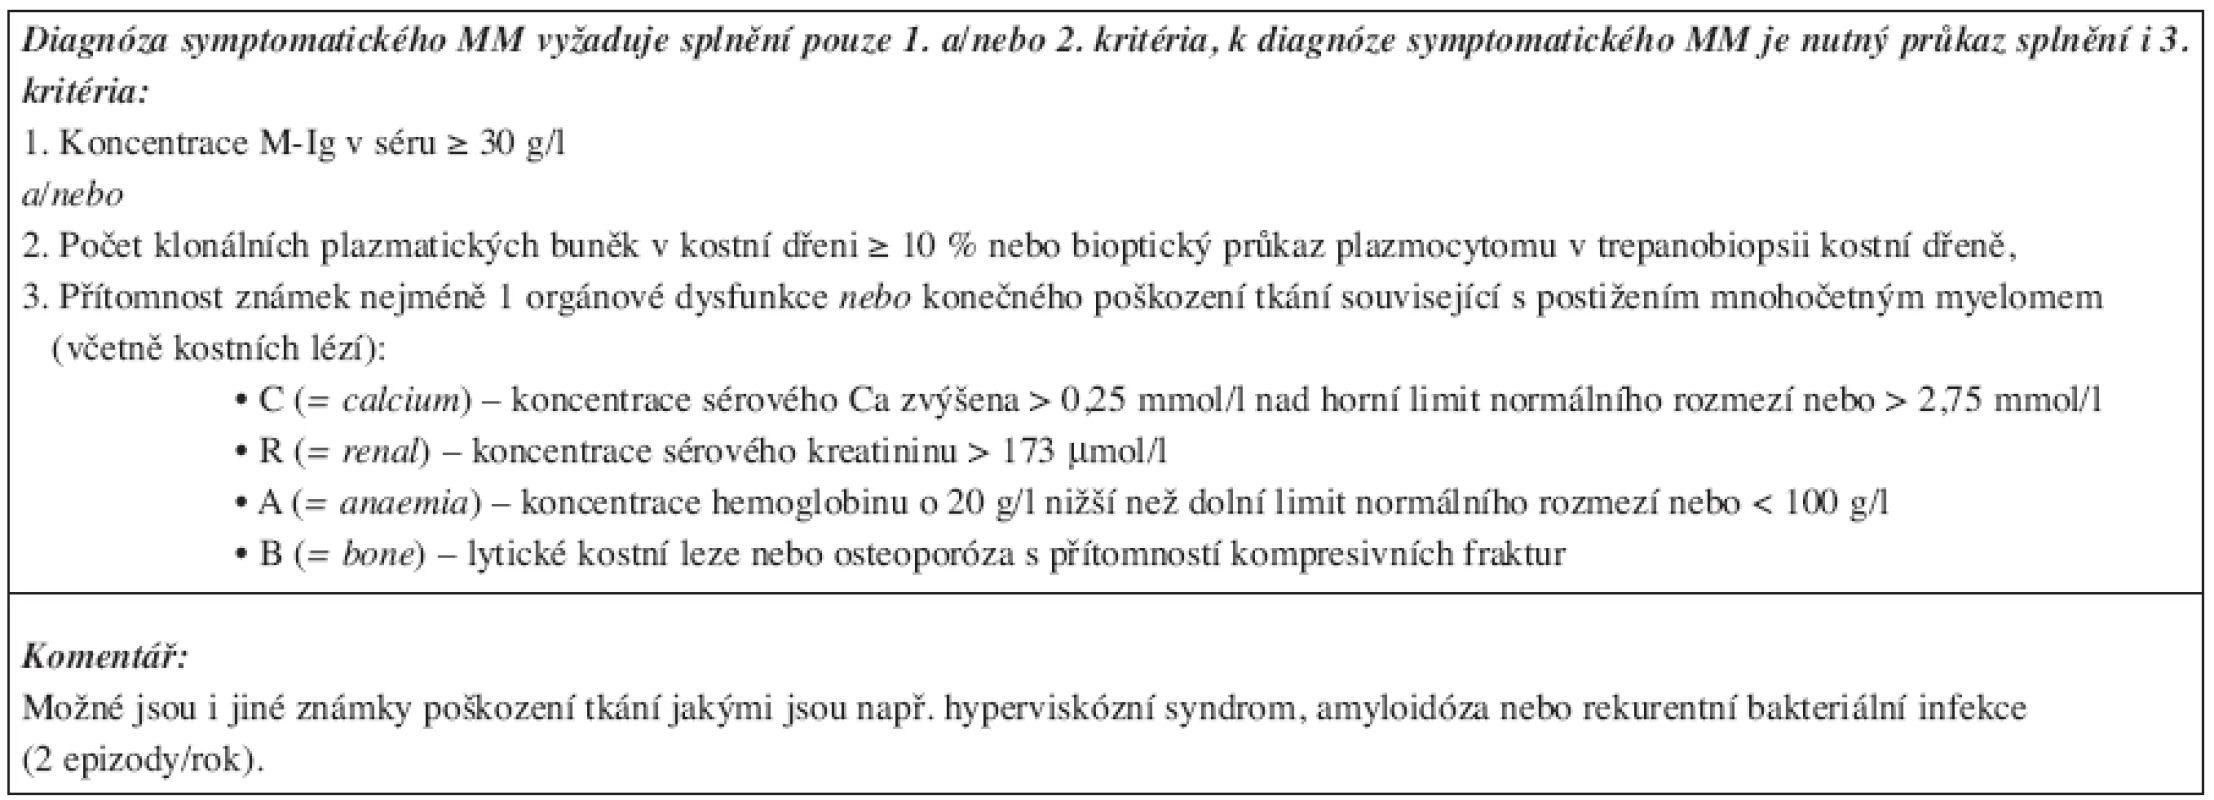 Diagnostická kritéria mnohočetného myelomu dle IMWG, 2003.